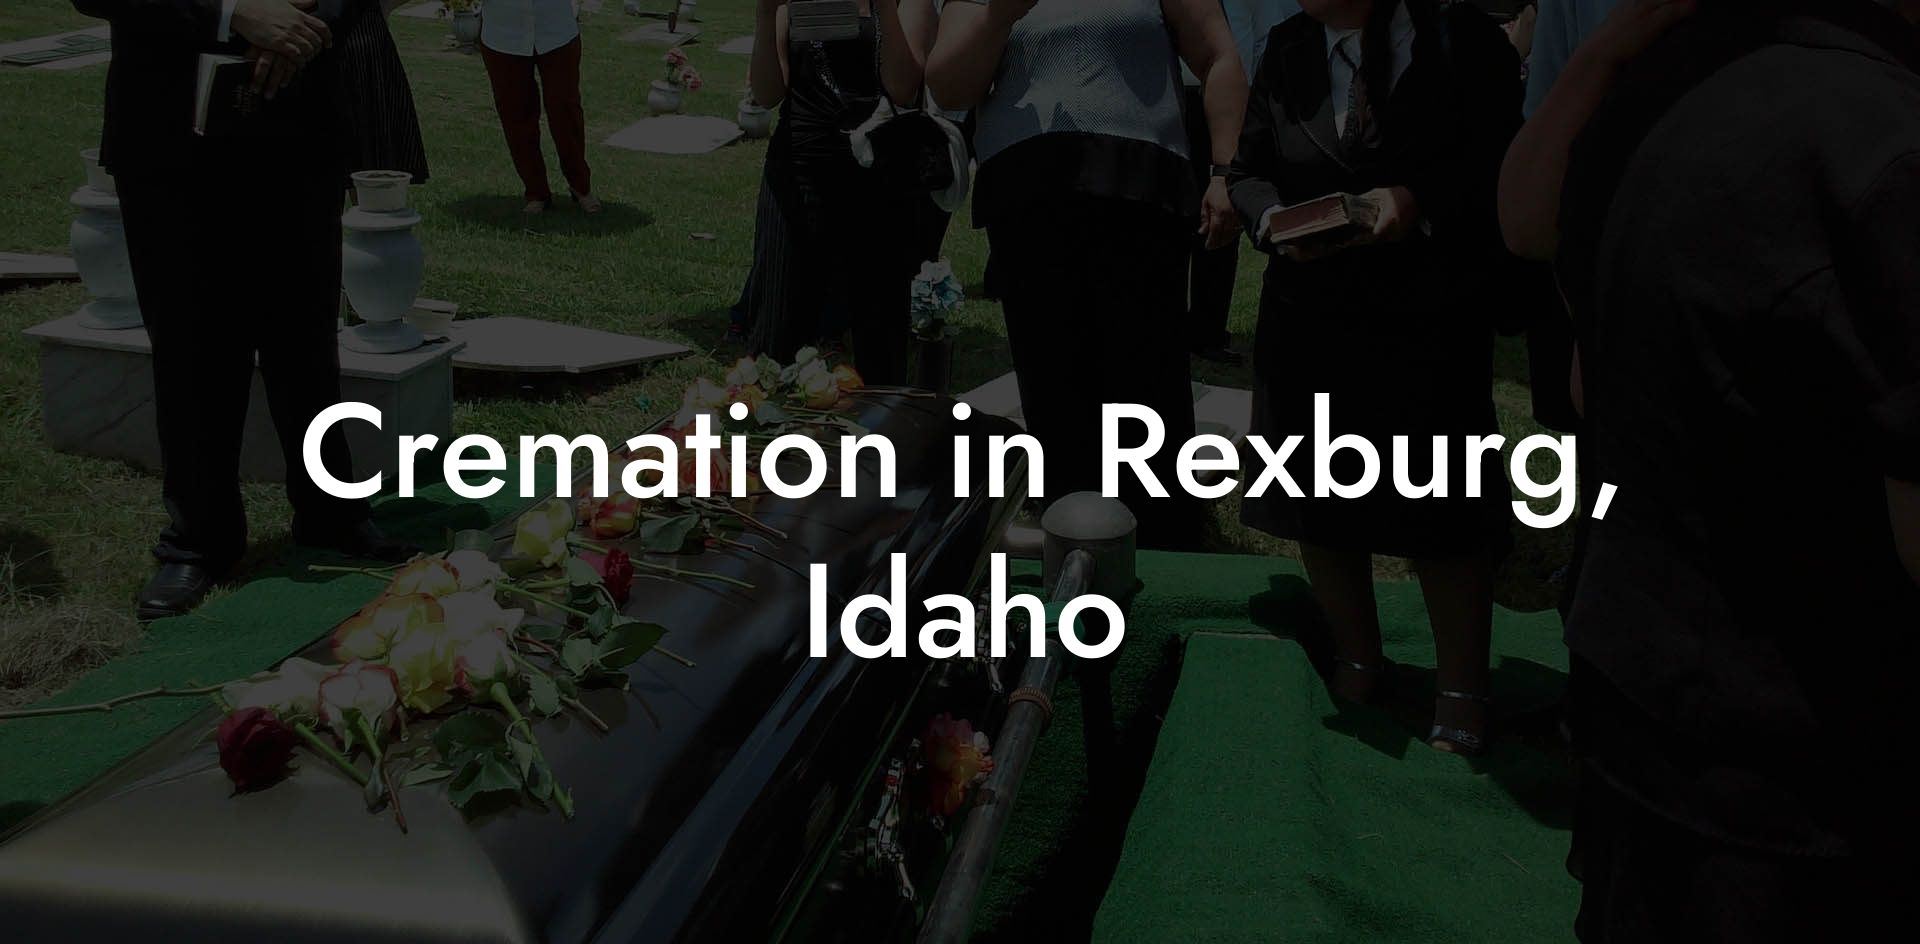 Cremation in Rexburg, Idaho